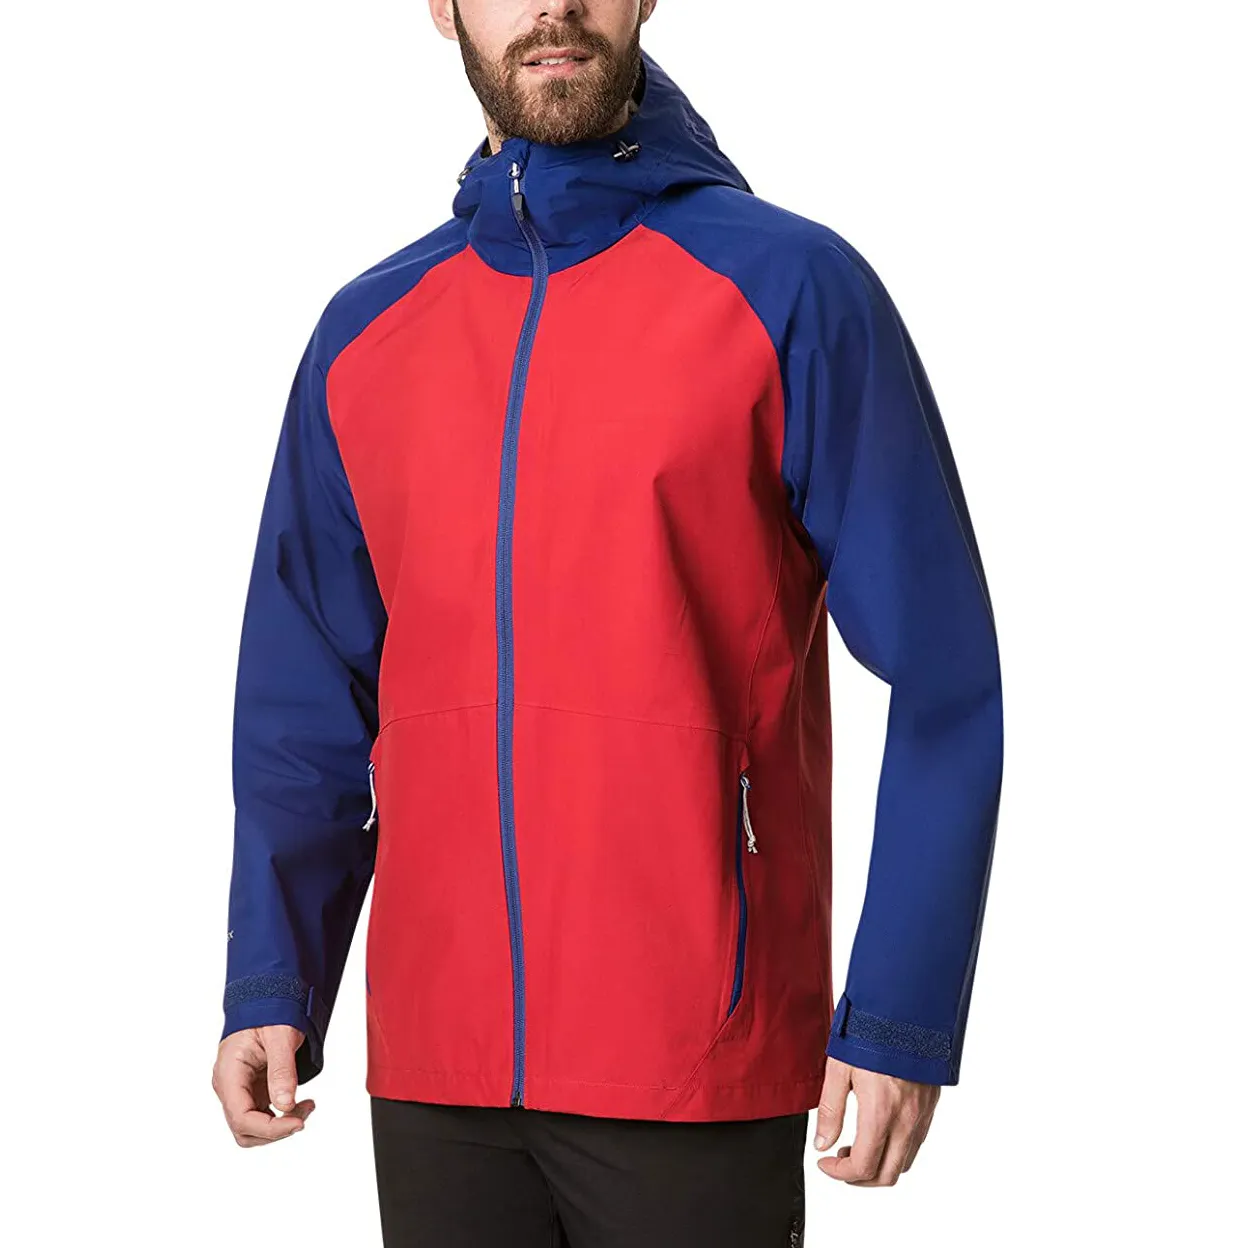 Chaquetas Softshell ligeras con capucha a prueba de viento precio razonable logotipo personalizado chaquetas Softshell cómodas de ajuste regular